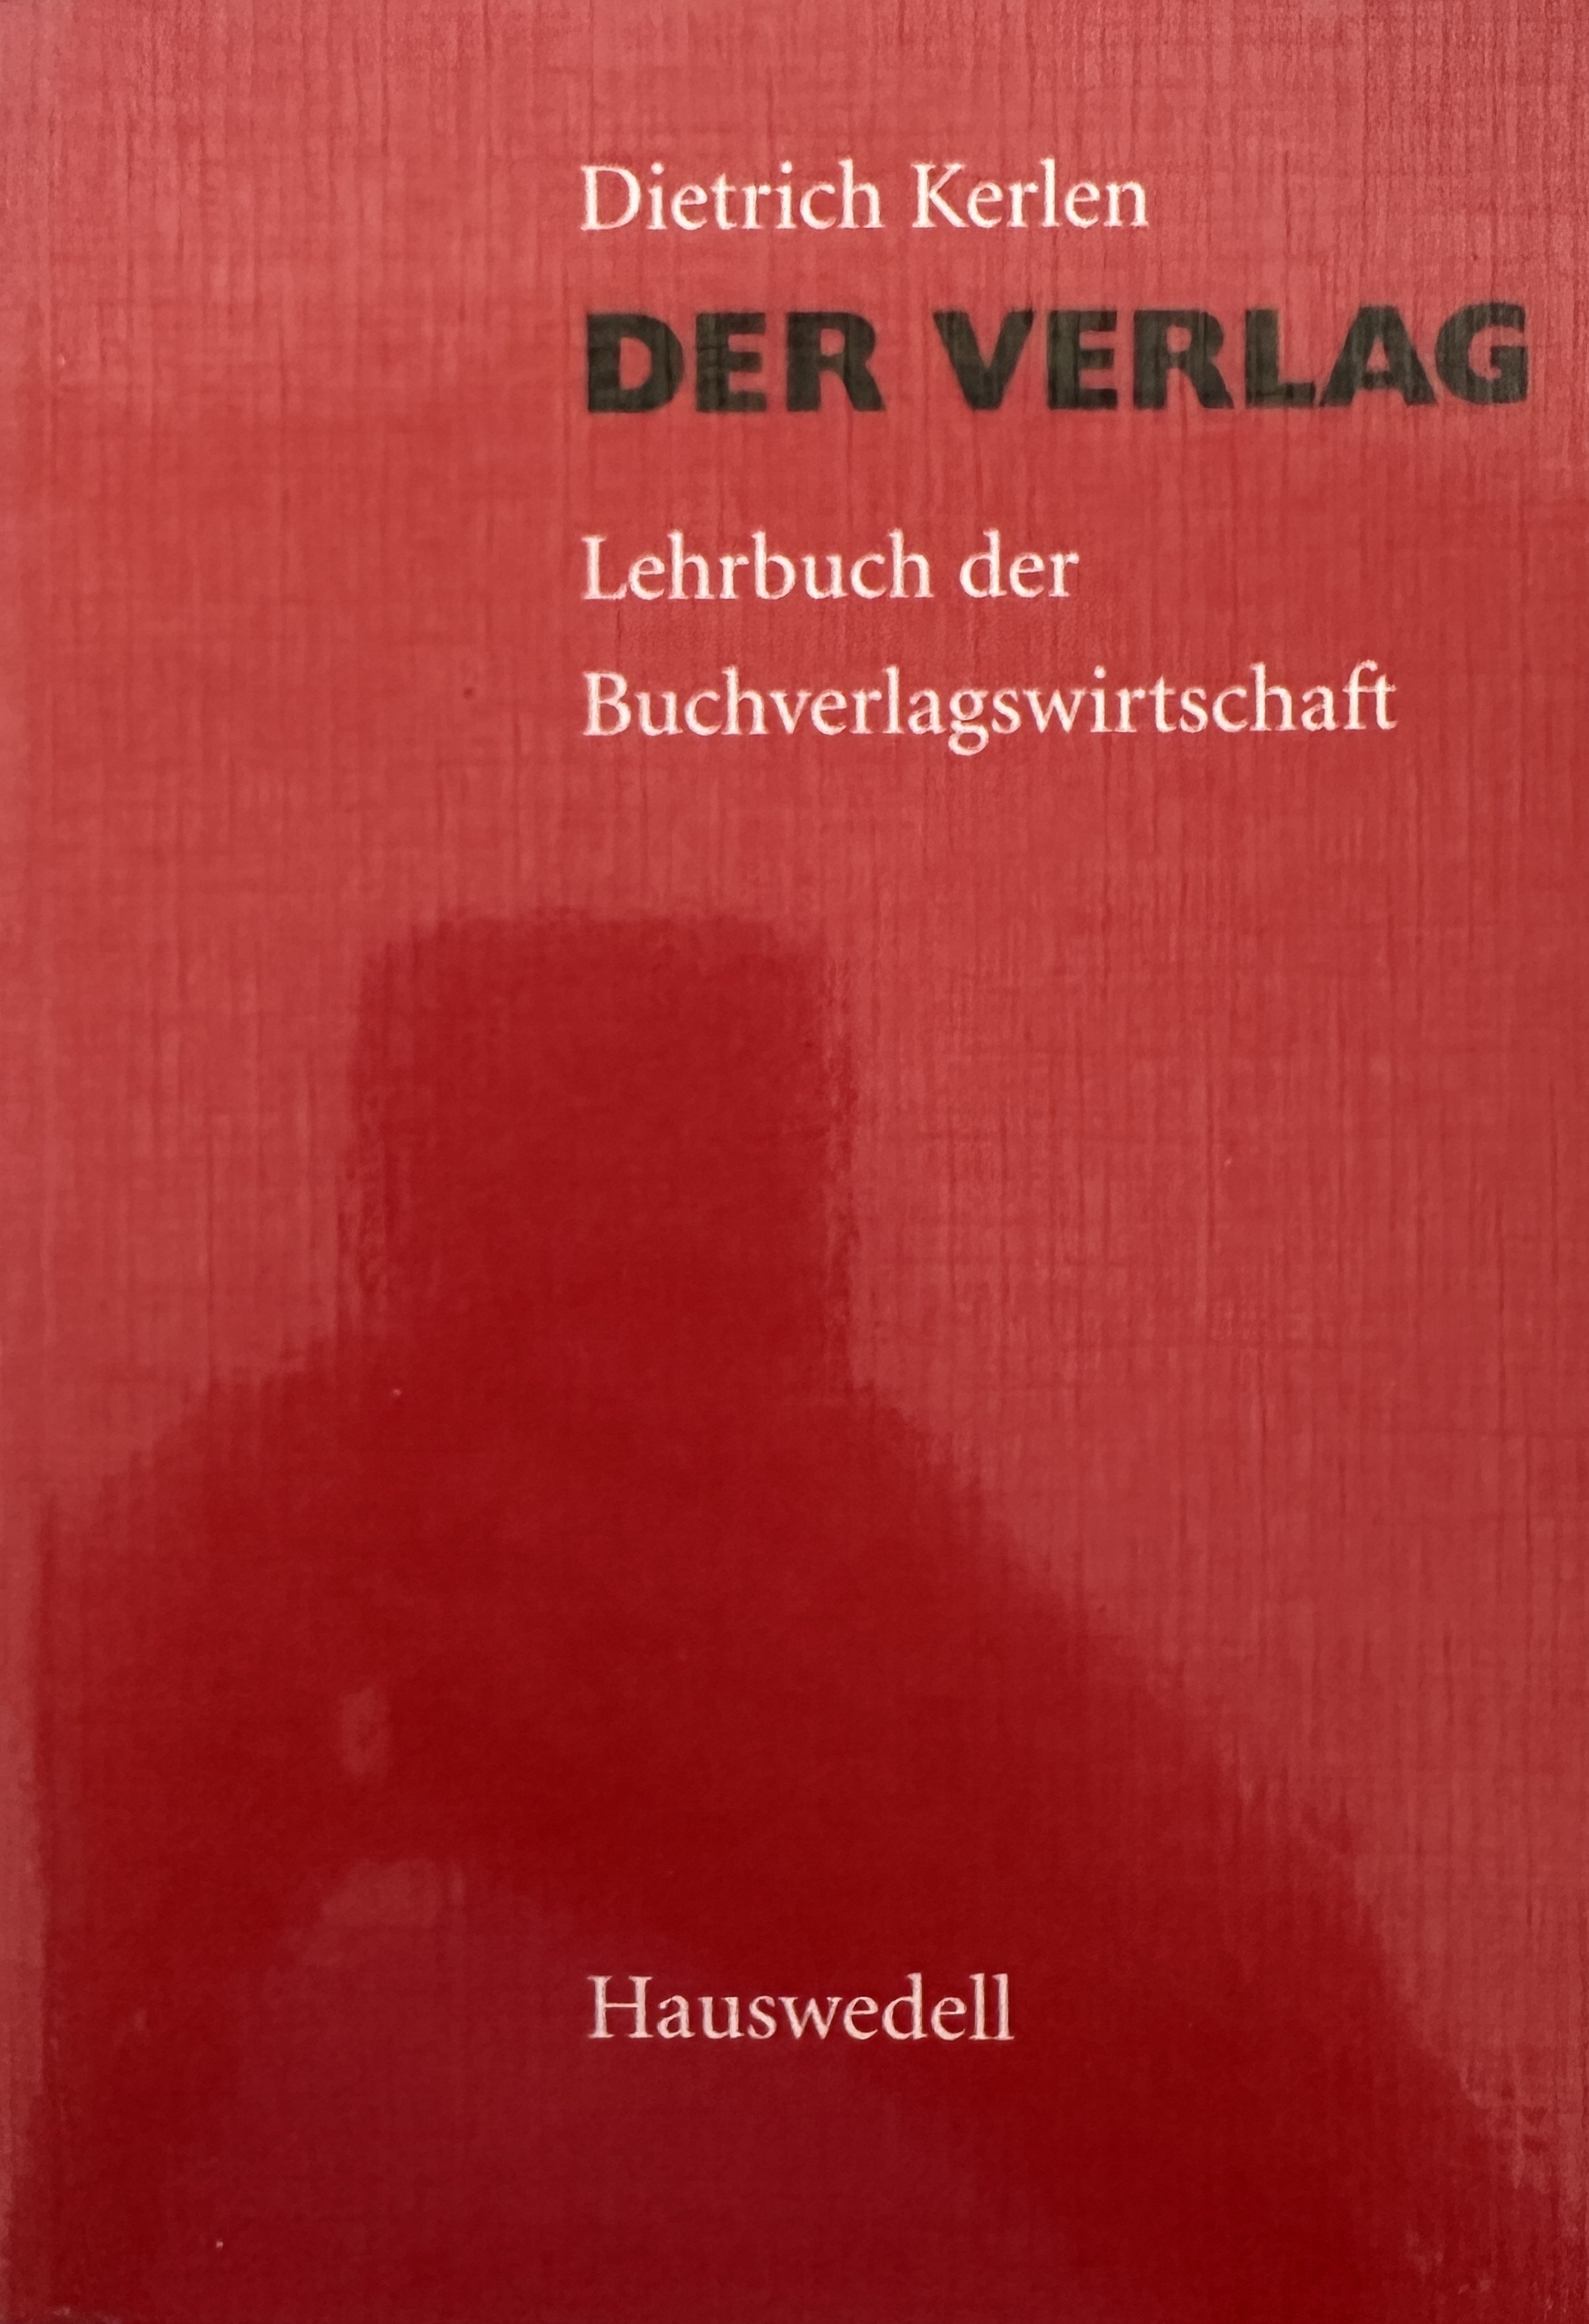 Der Verlag: Lehrbuch der Buchverlagswirtschaft. - Kerlen, Dietrich